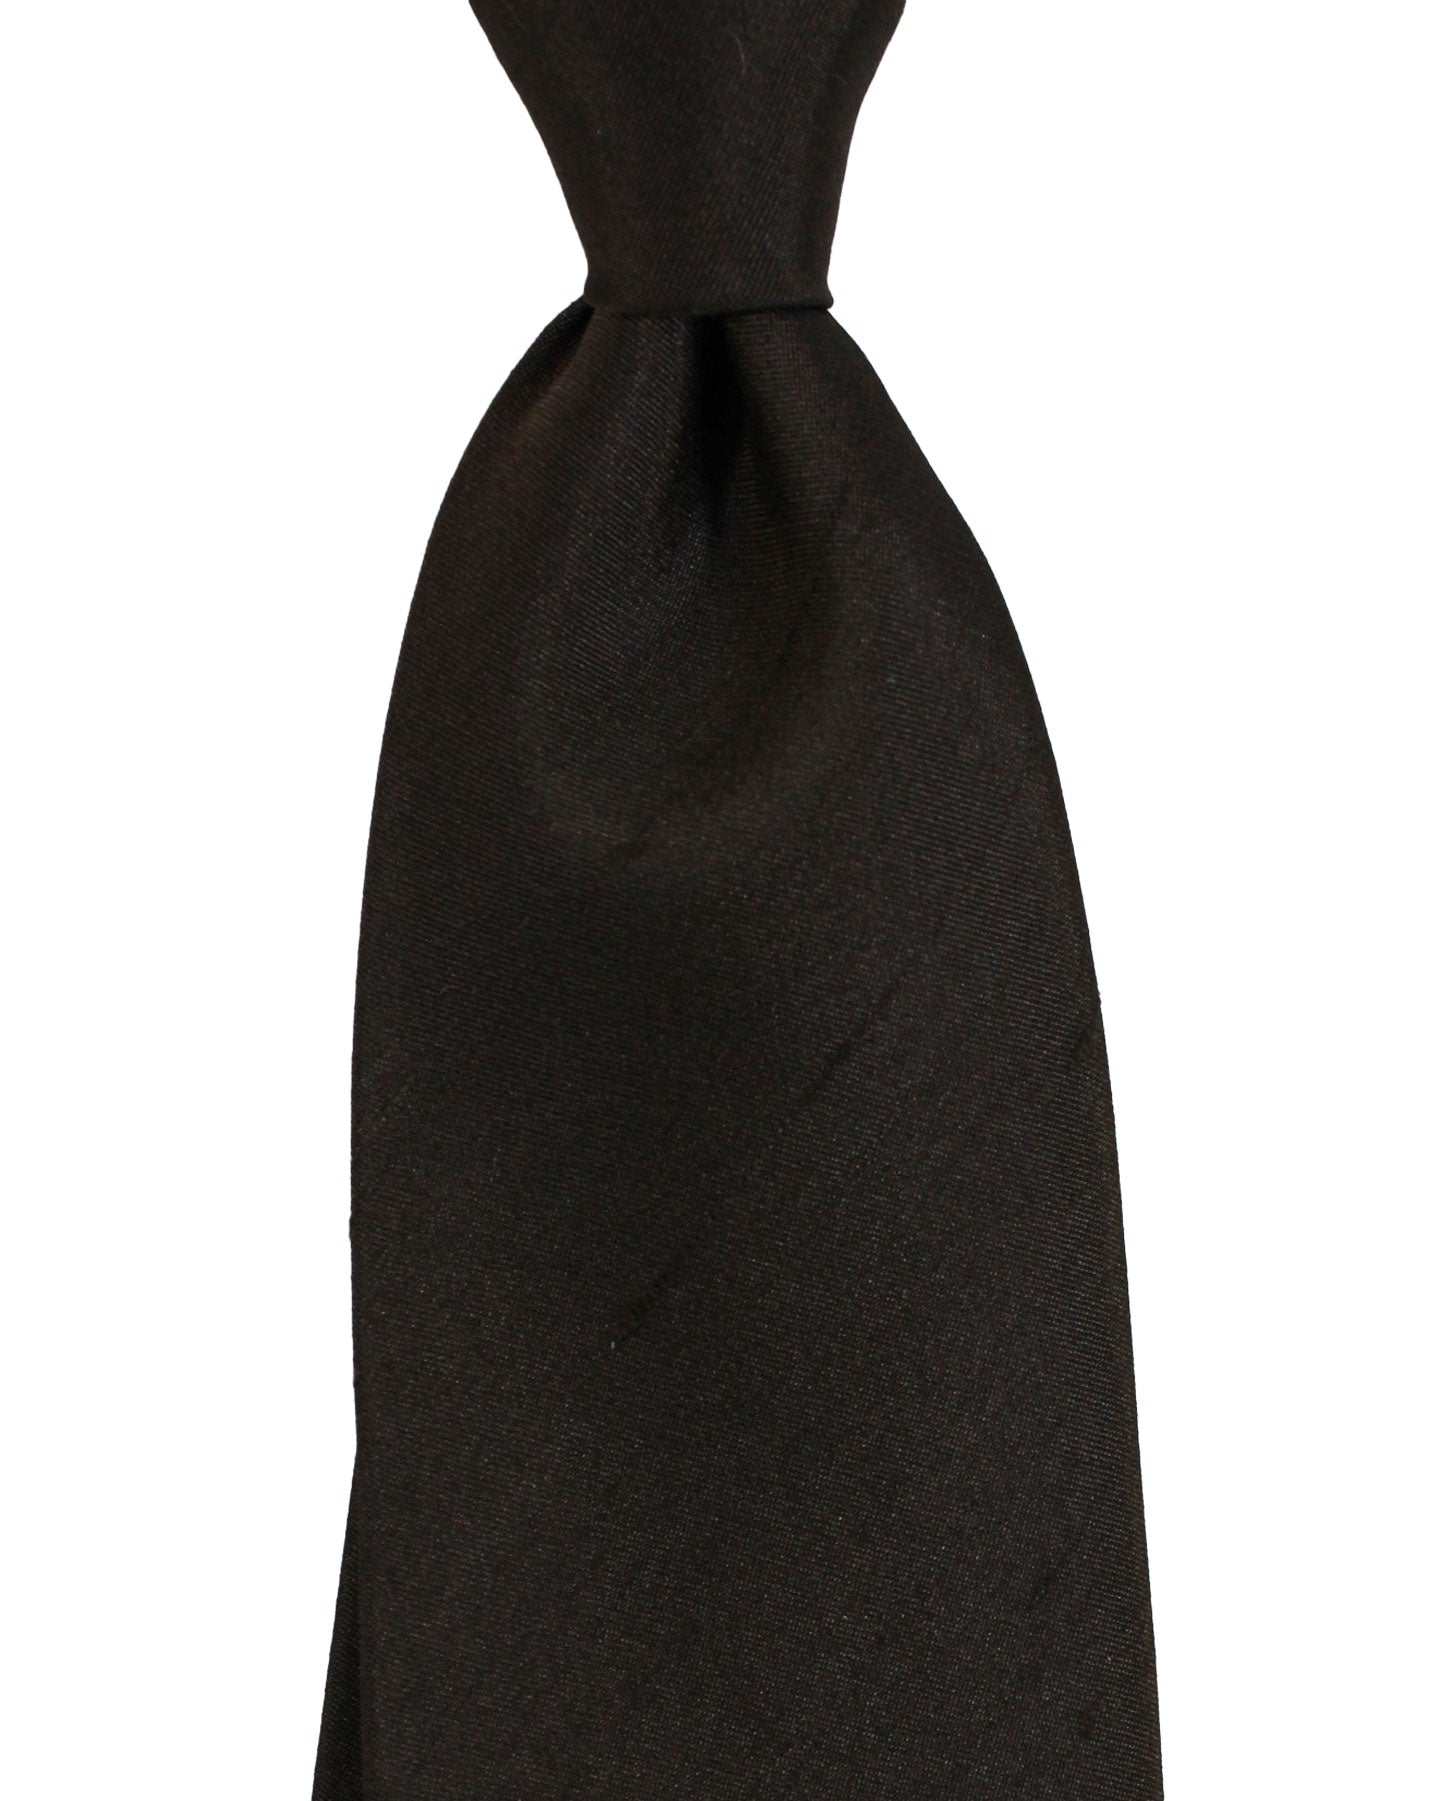 Kiton Silk Tie Brown Grosgrain Design - Sevenfold Necktie